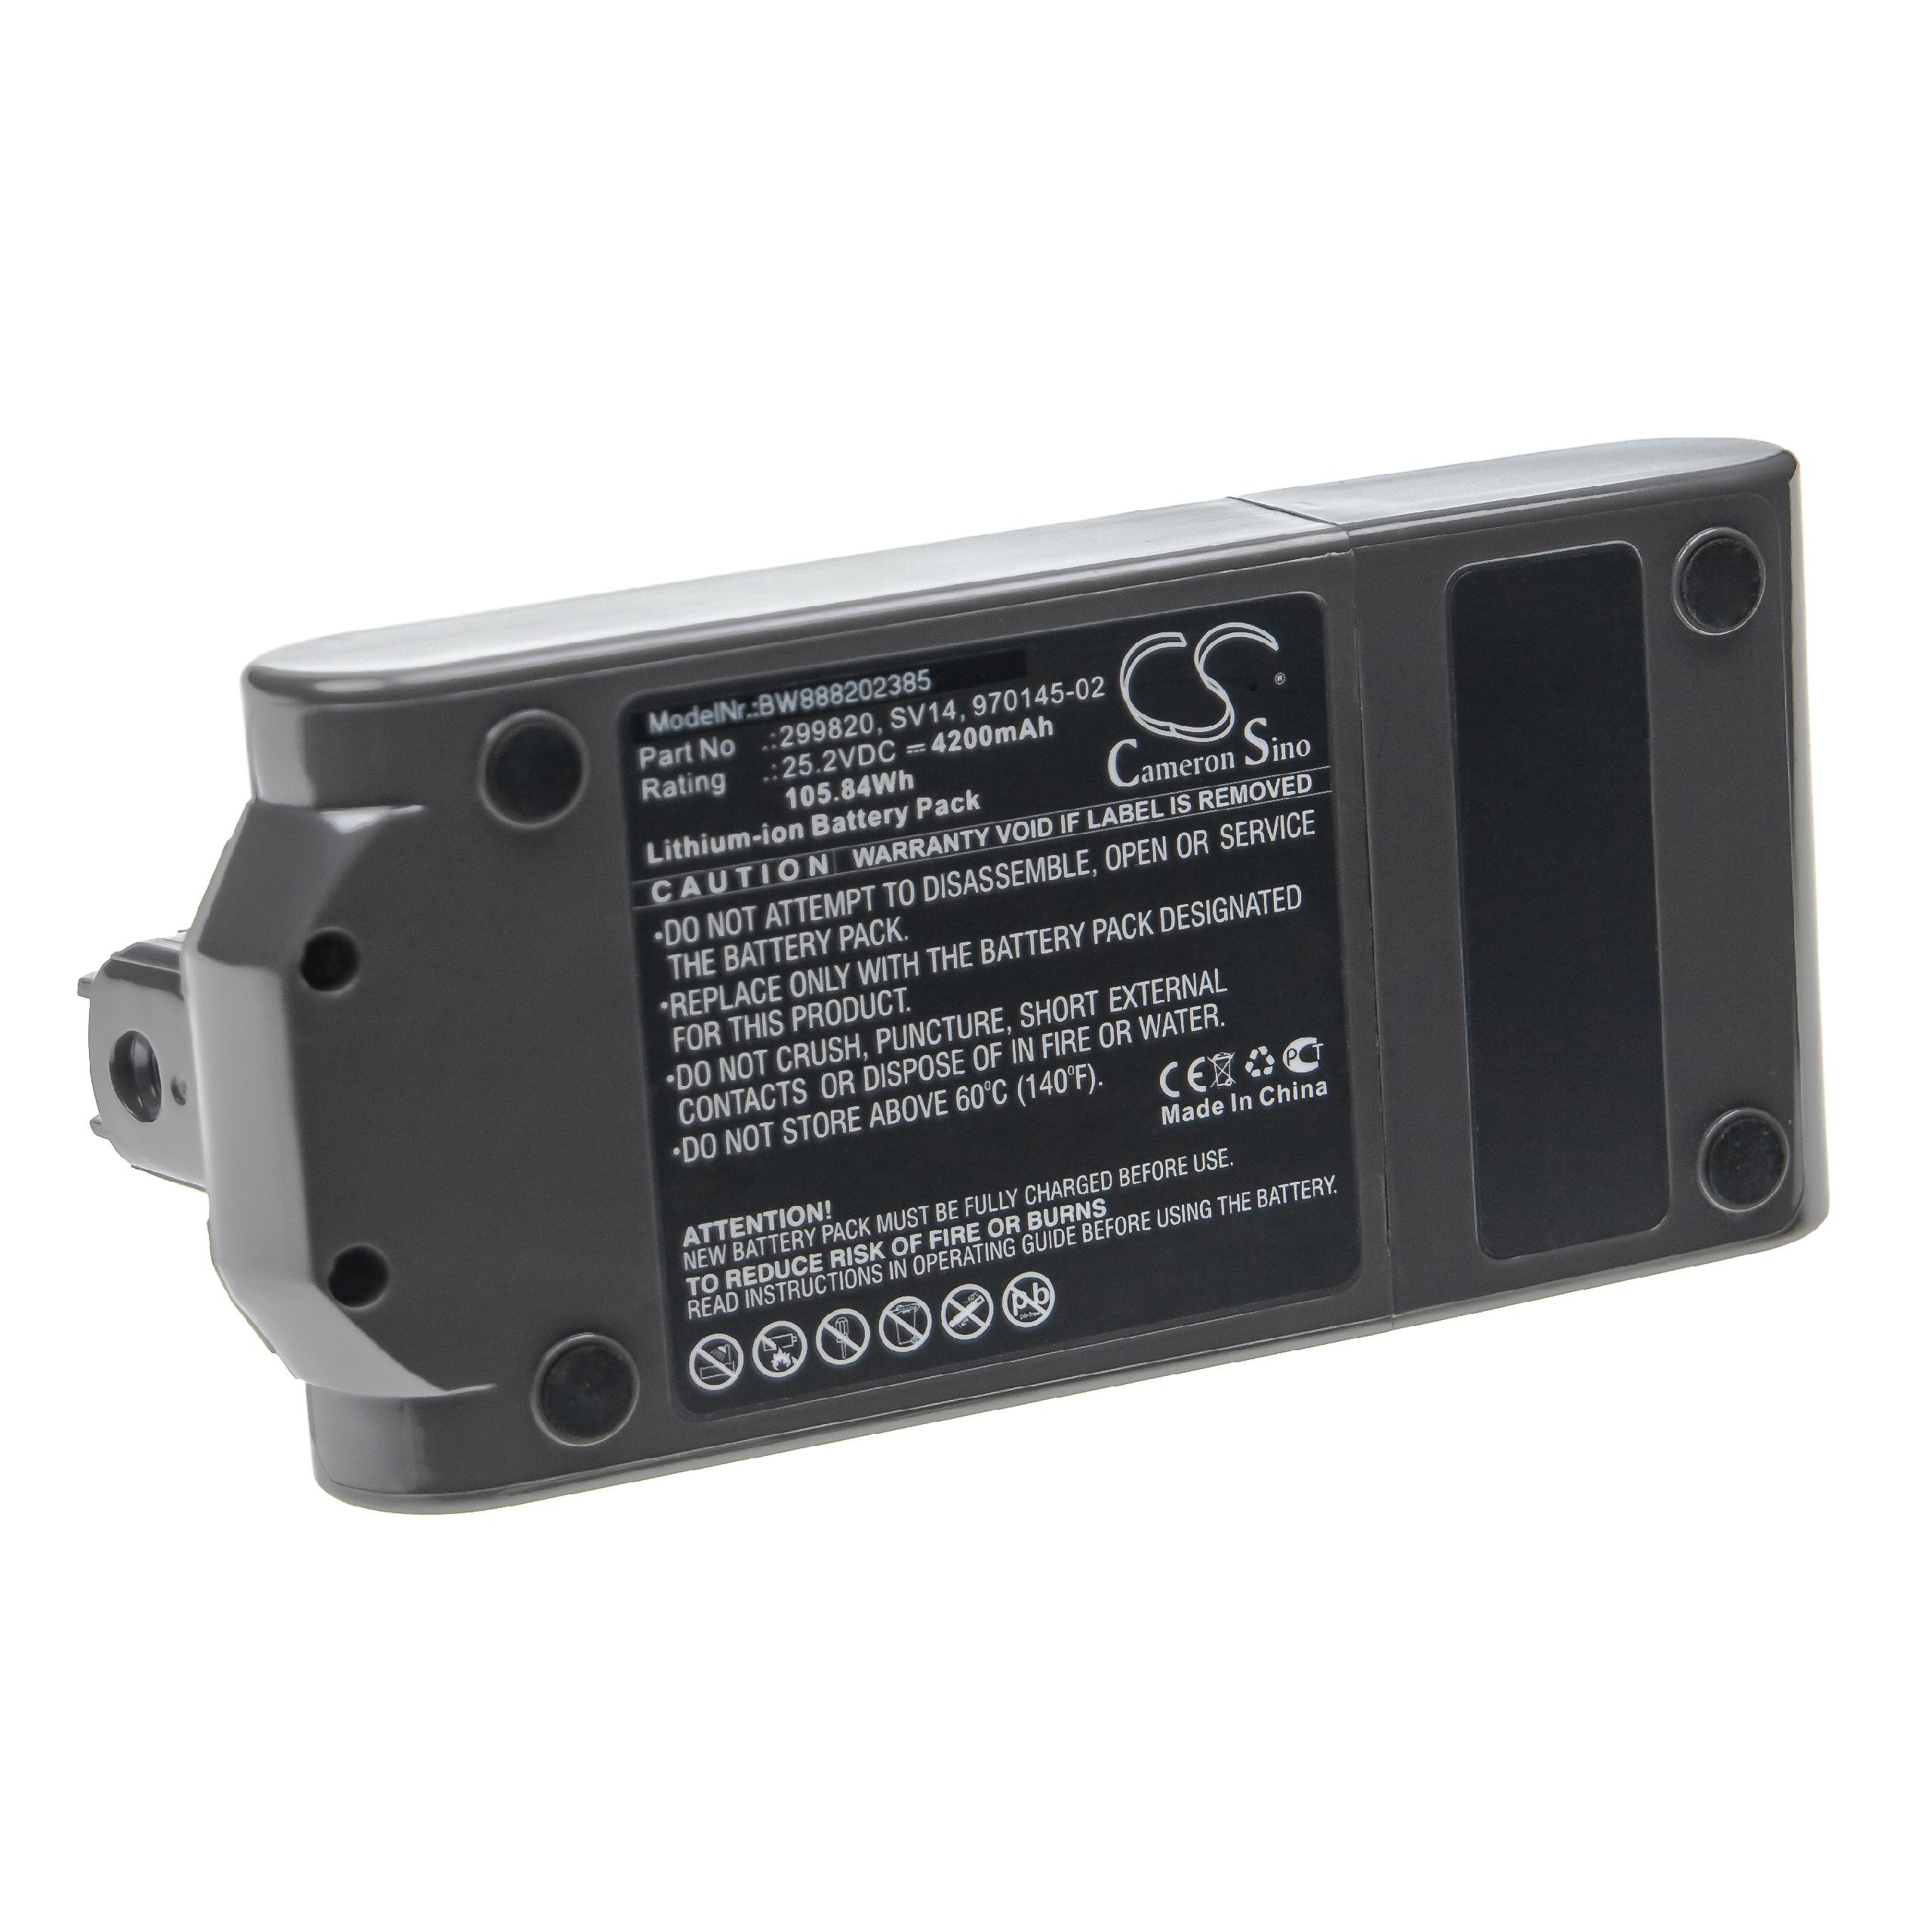 Batterie remplace Dyson 970145-02, 299820 pour aspirateur - 4200mAh 25,2V Li-ion